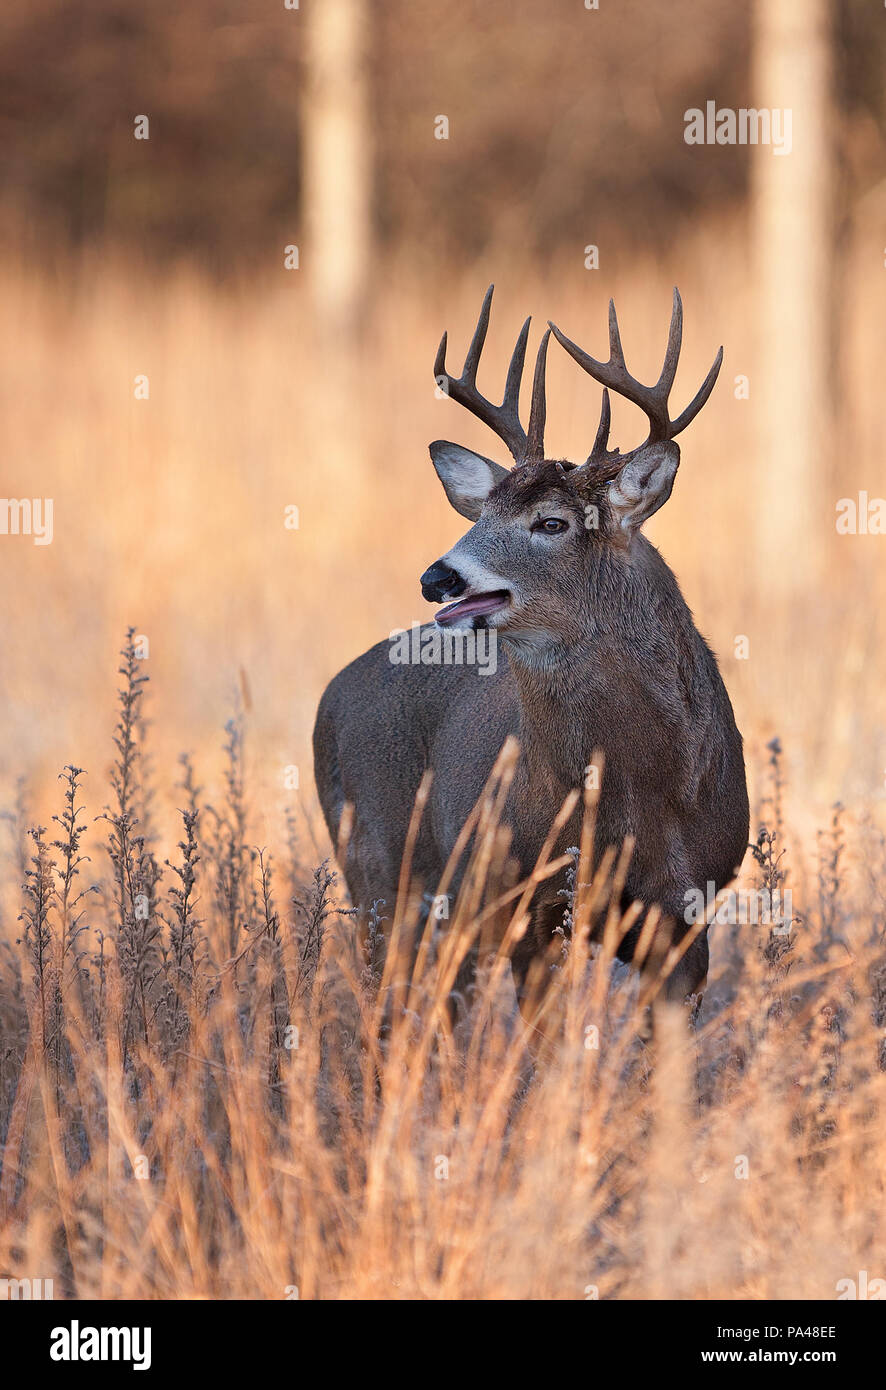 White-tailed deer buck à la recherche d'un partenaire au cours de l'ornière dans la lumière de l'automne tôt le matin au Canada Banque D'Images